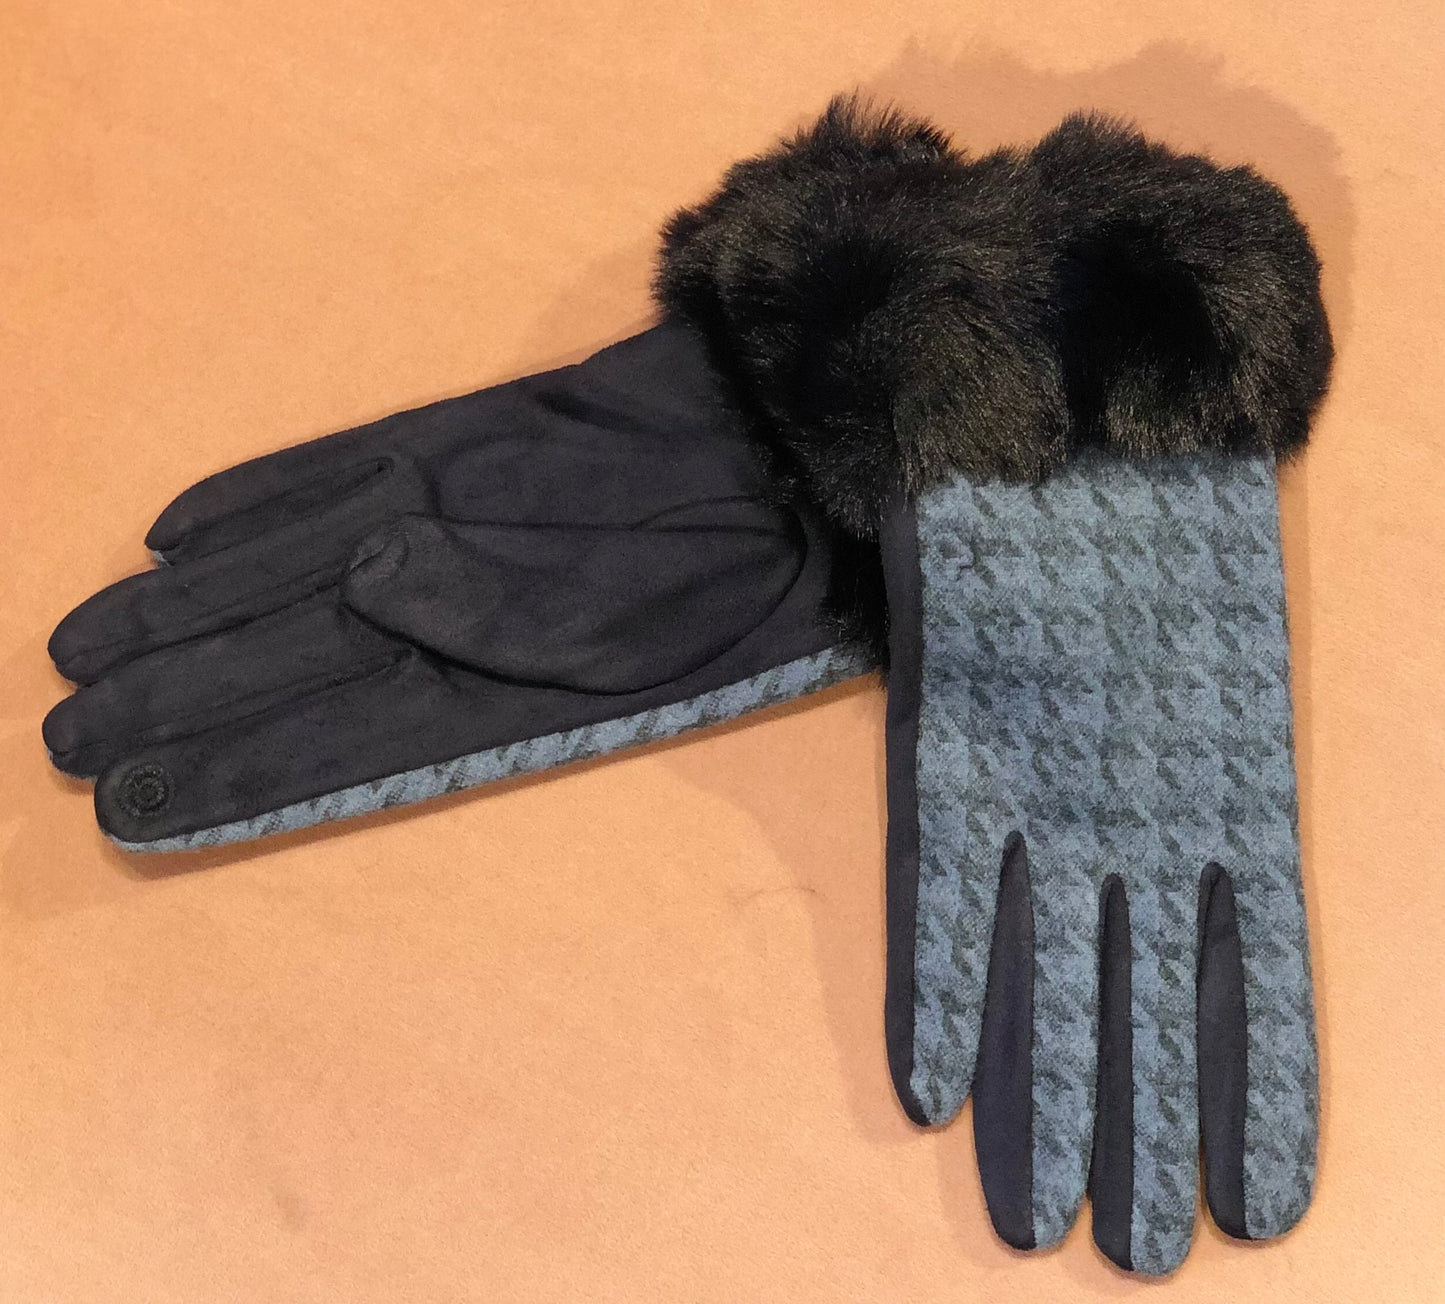 GK- 0307 Gloves